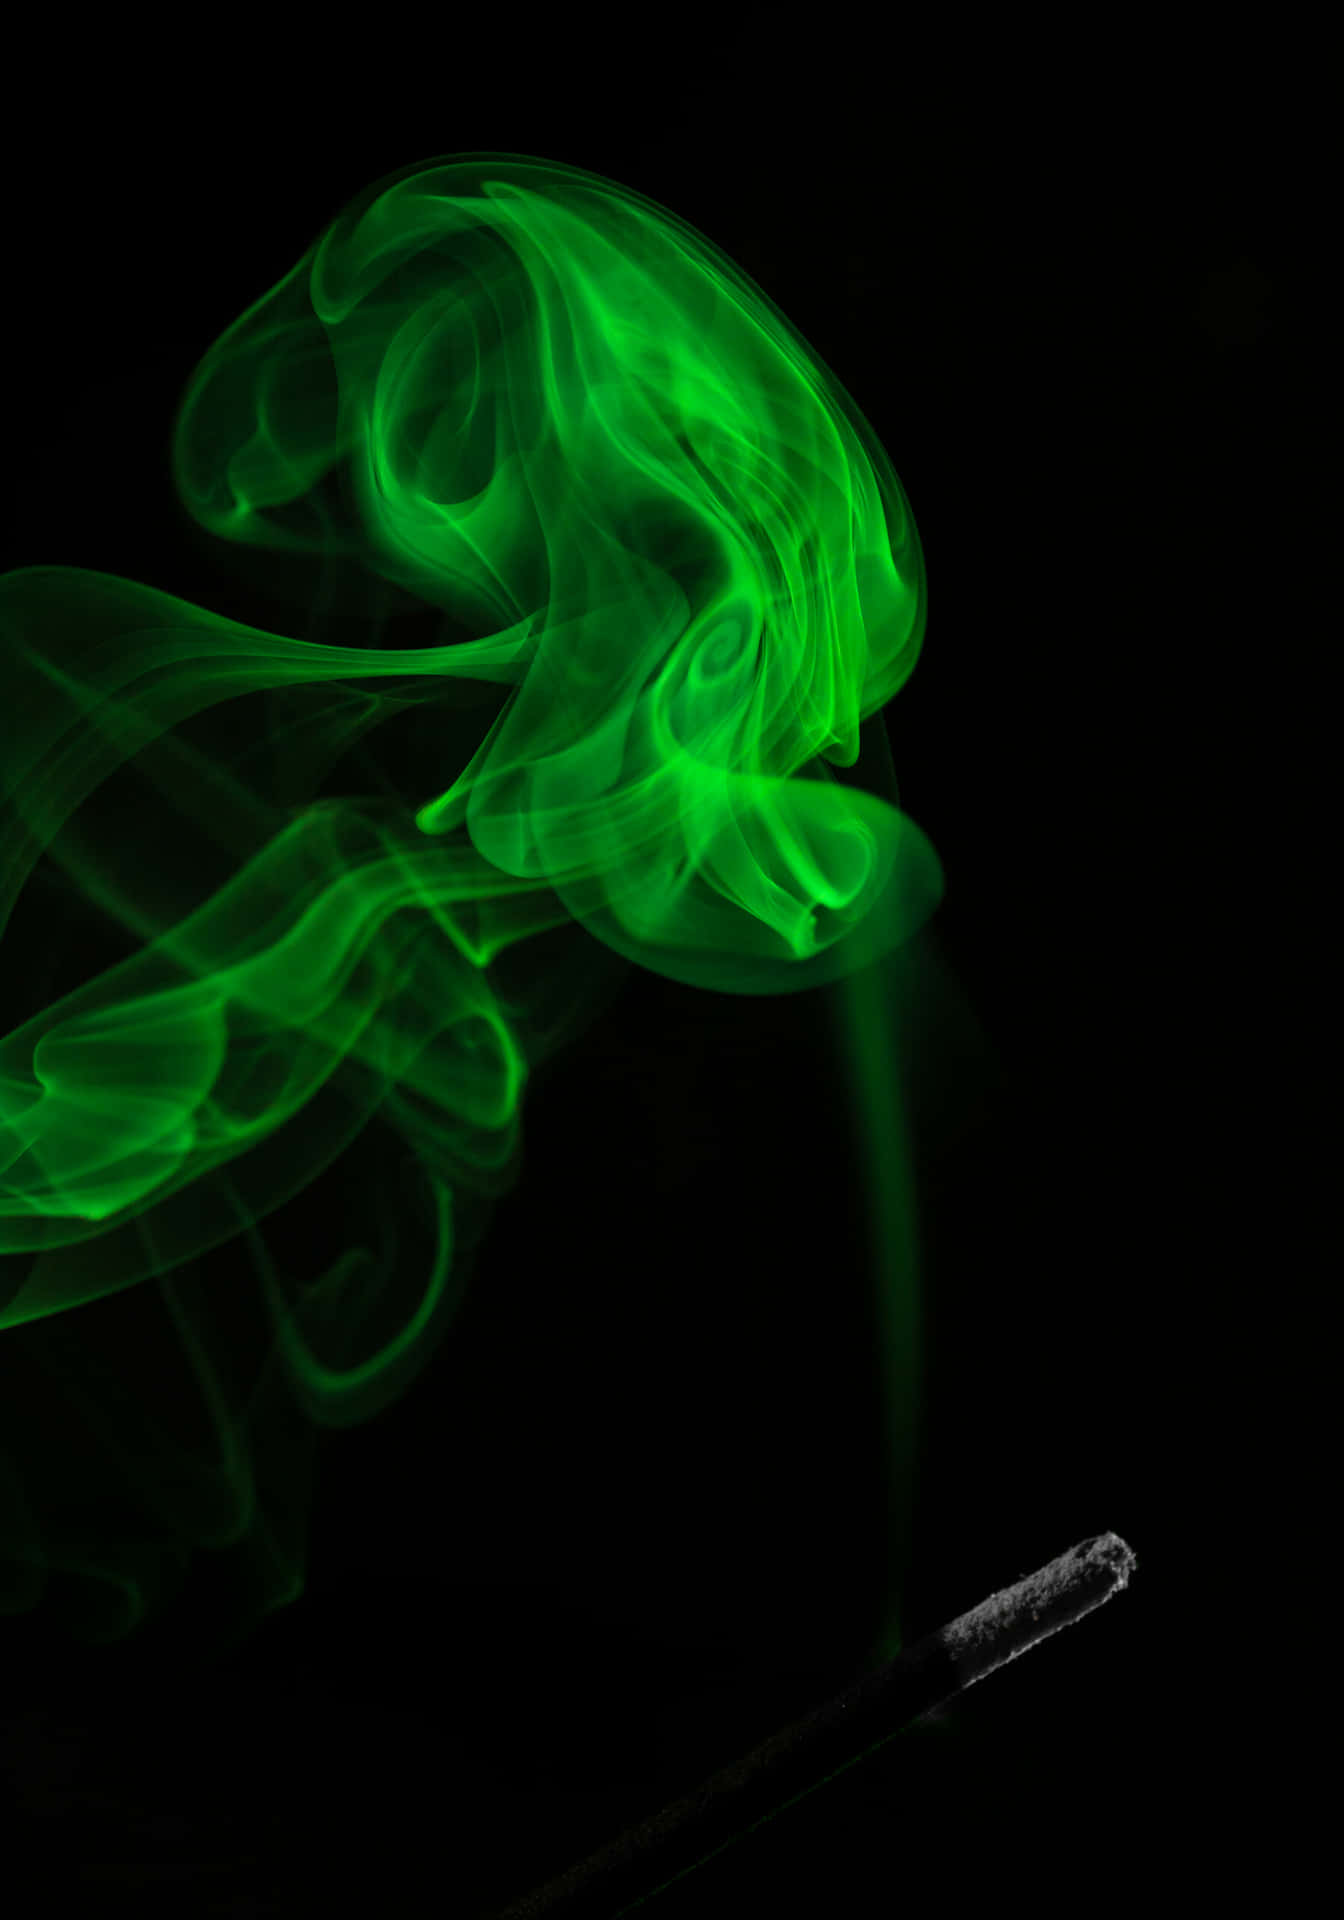 Erlebensie Den Intensiven Geschmack Von Green Smoke Mit Seiner Einzigartigen Kombination Aus Nikotin Und Geschmackvollem Dampfrauch.